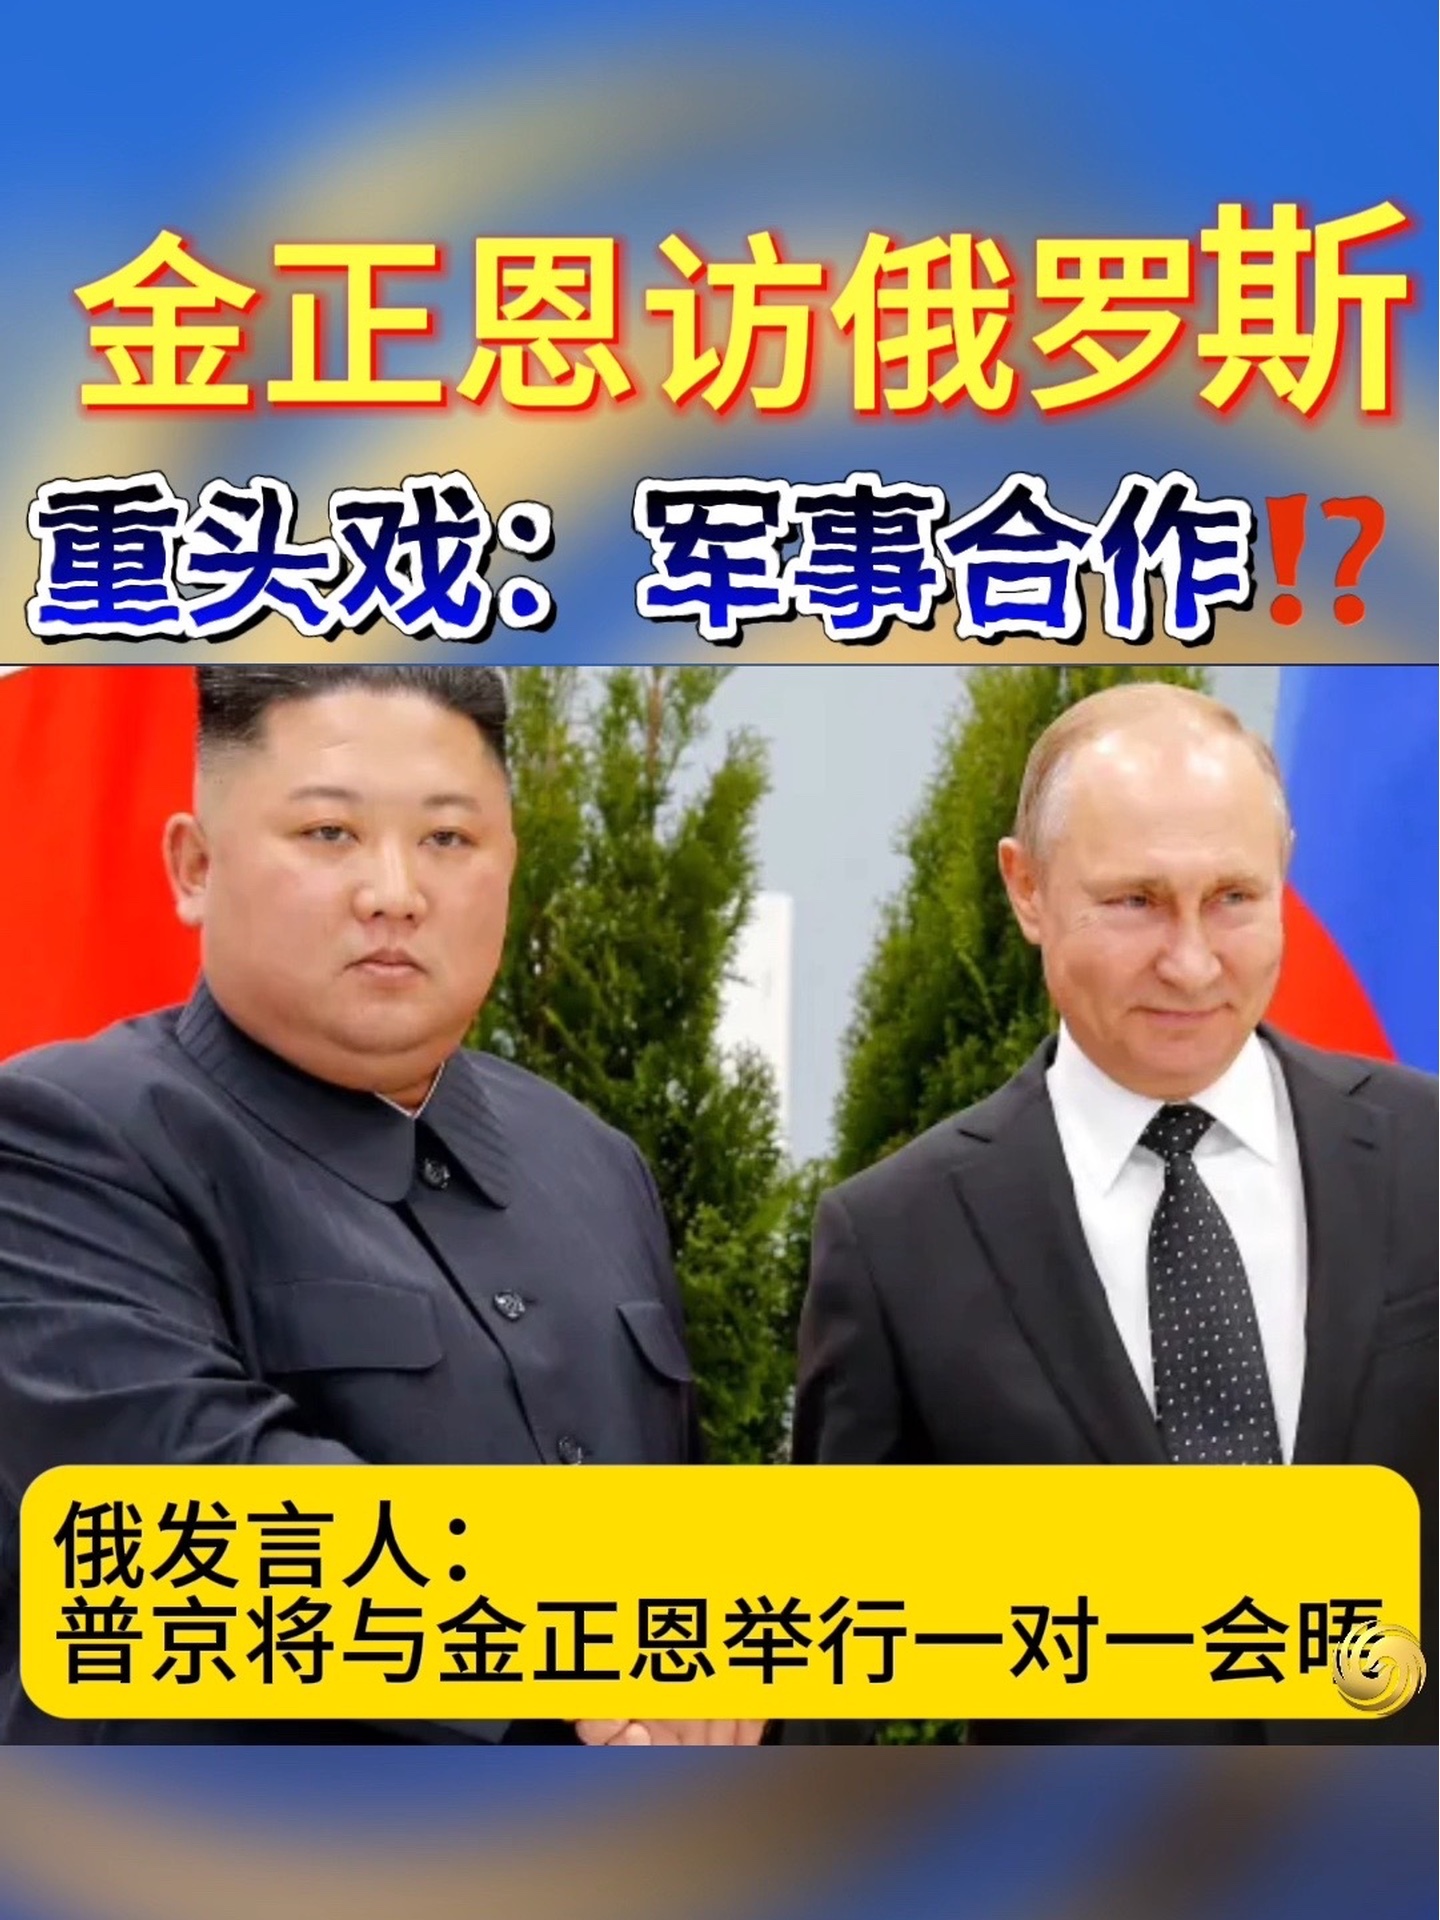 朝鲜俄罗斯将有可能军事合作？朝鲜领导人金正恩最快于12号下午在远东地区与俄罗斯总统普京会面！#普京 #朝鲜 #俄罗斯#俄朝友谊